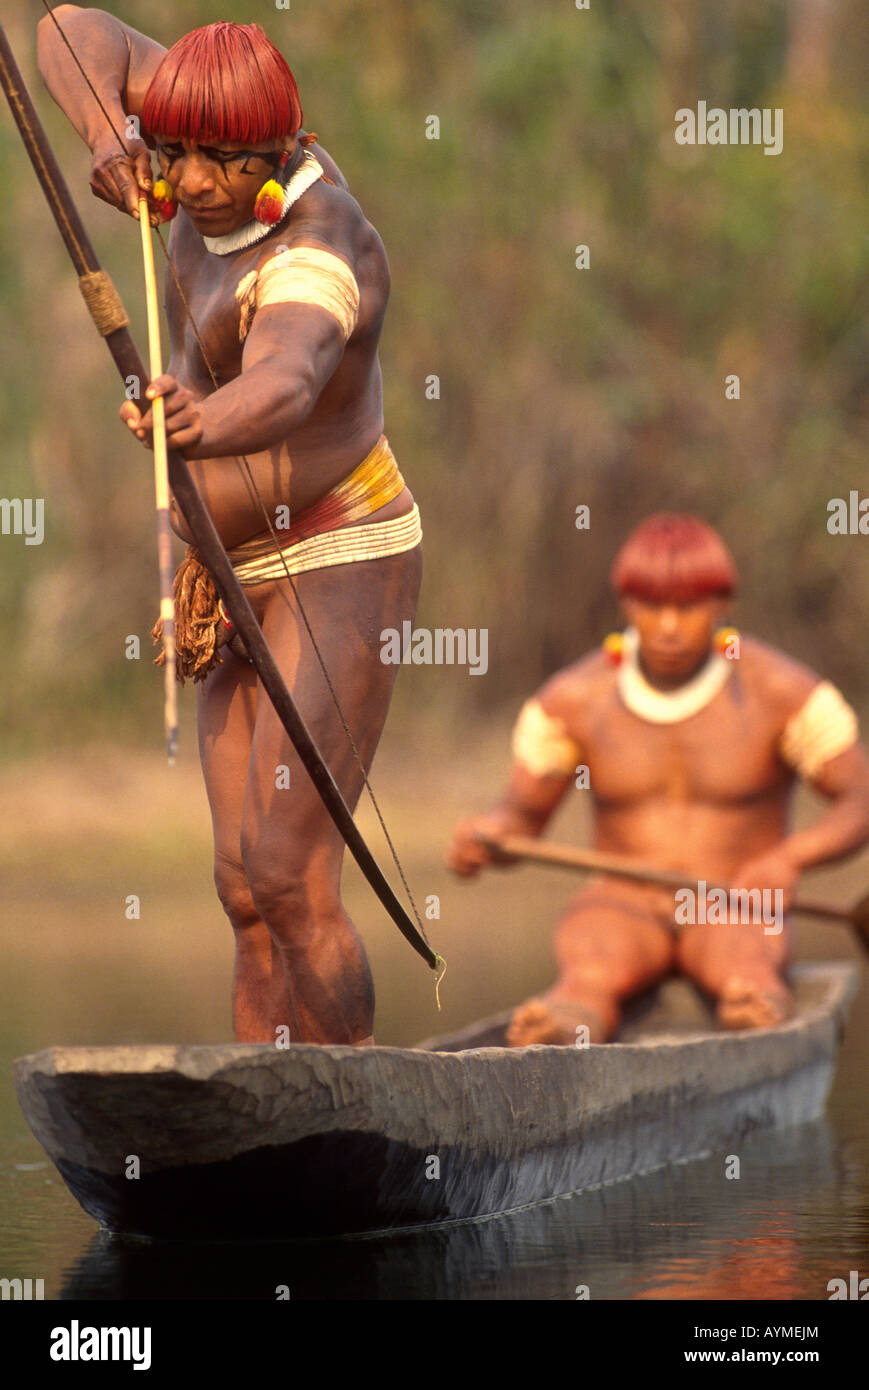 Xingu selva Amazónica Brasil Yaulapiti Indígenas Indios en canoa, la pesca con arco y flecha Foto de stock